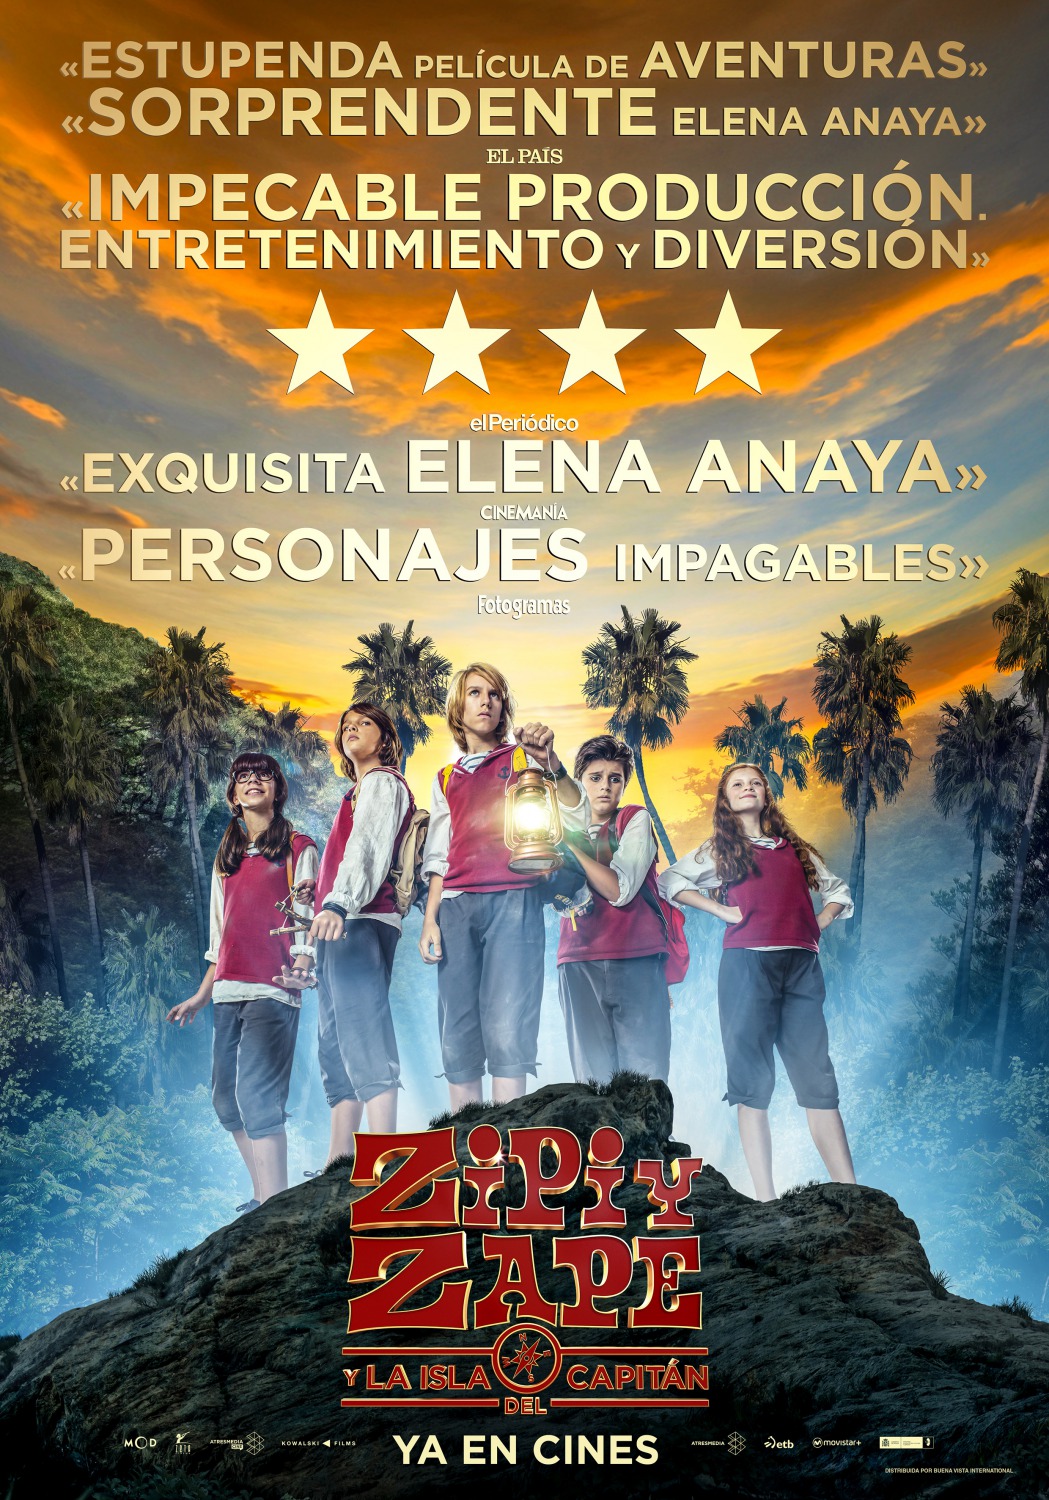 Extra Large Movie Poster Image for Zipi y Zape y la Isla del Capitán (#6 of 6)